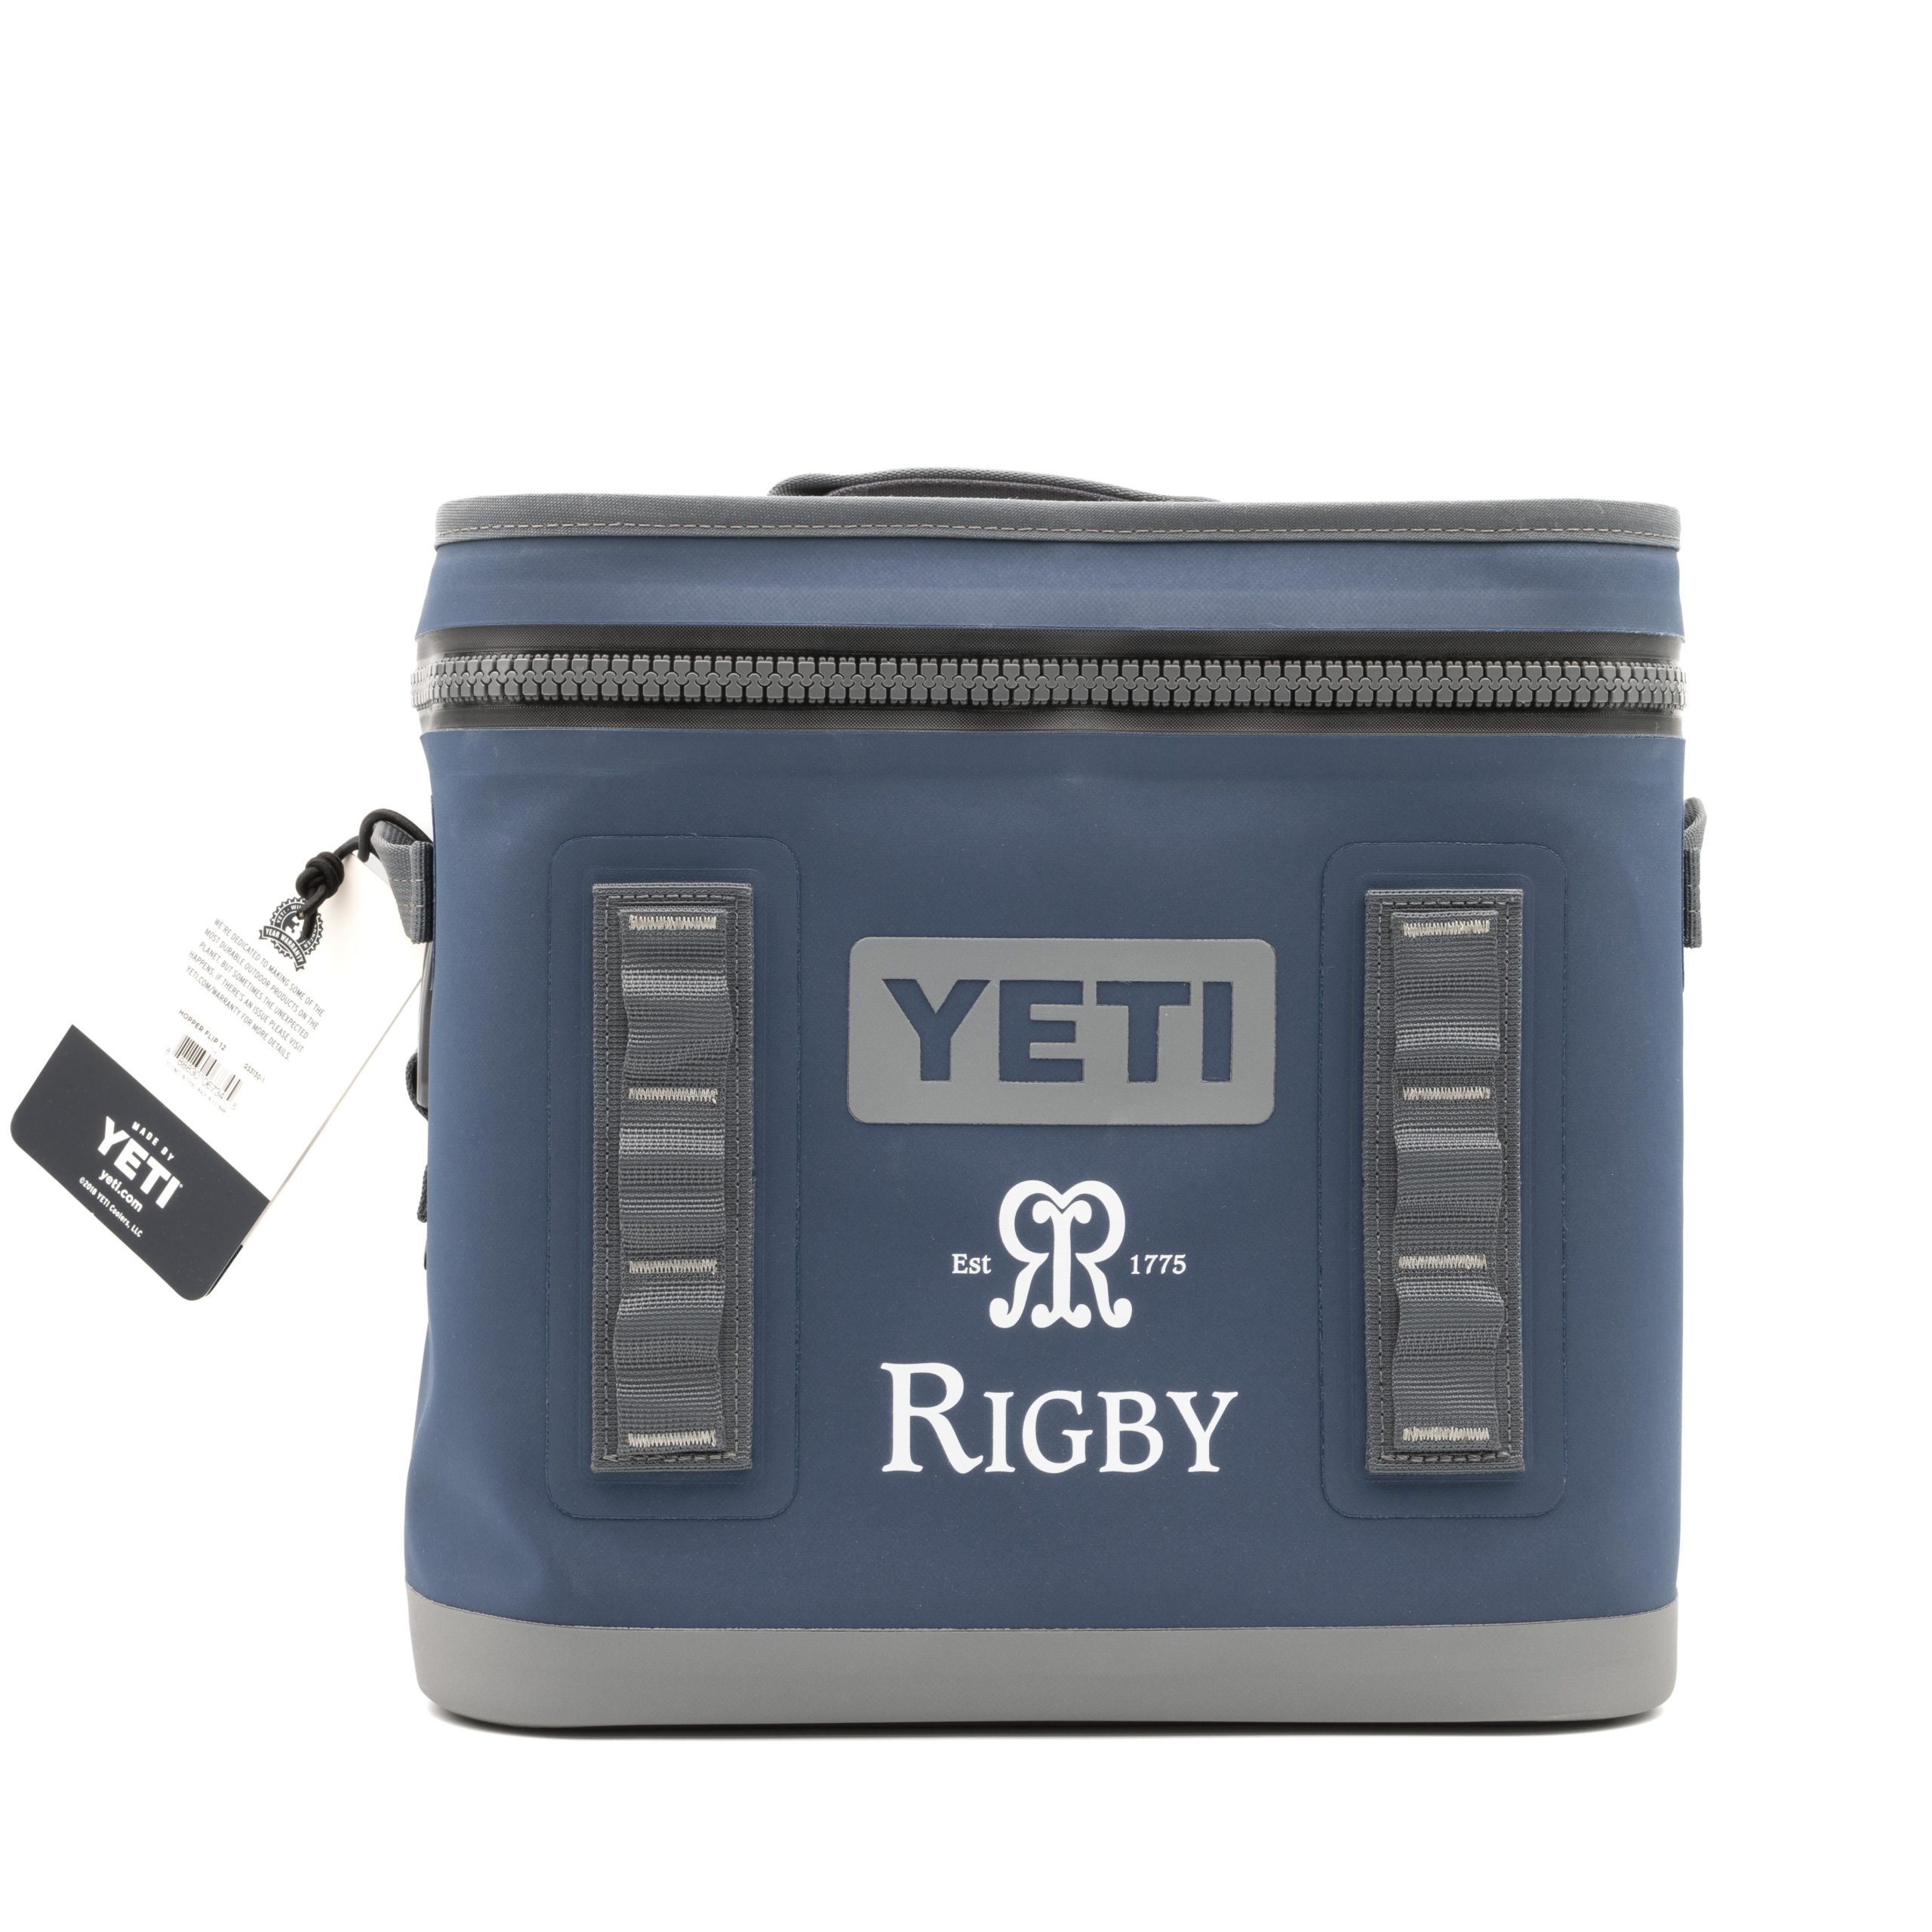 Rigby YETI Cool Bag - John Rigby & Co.